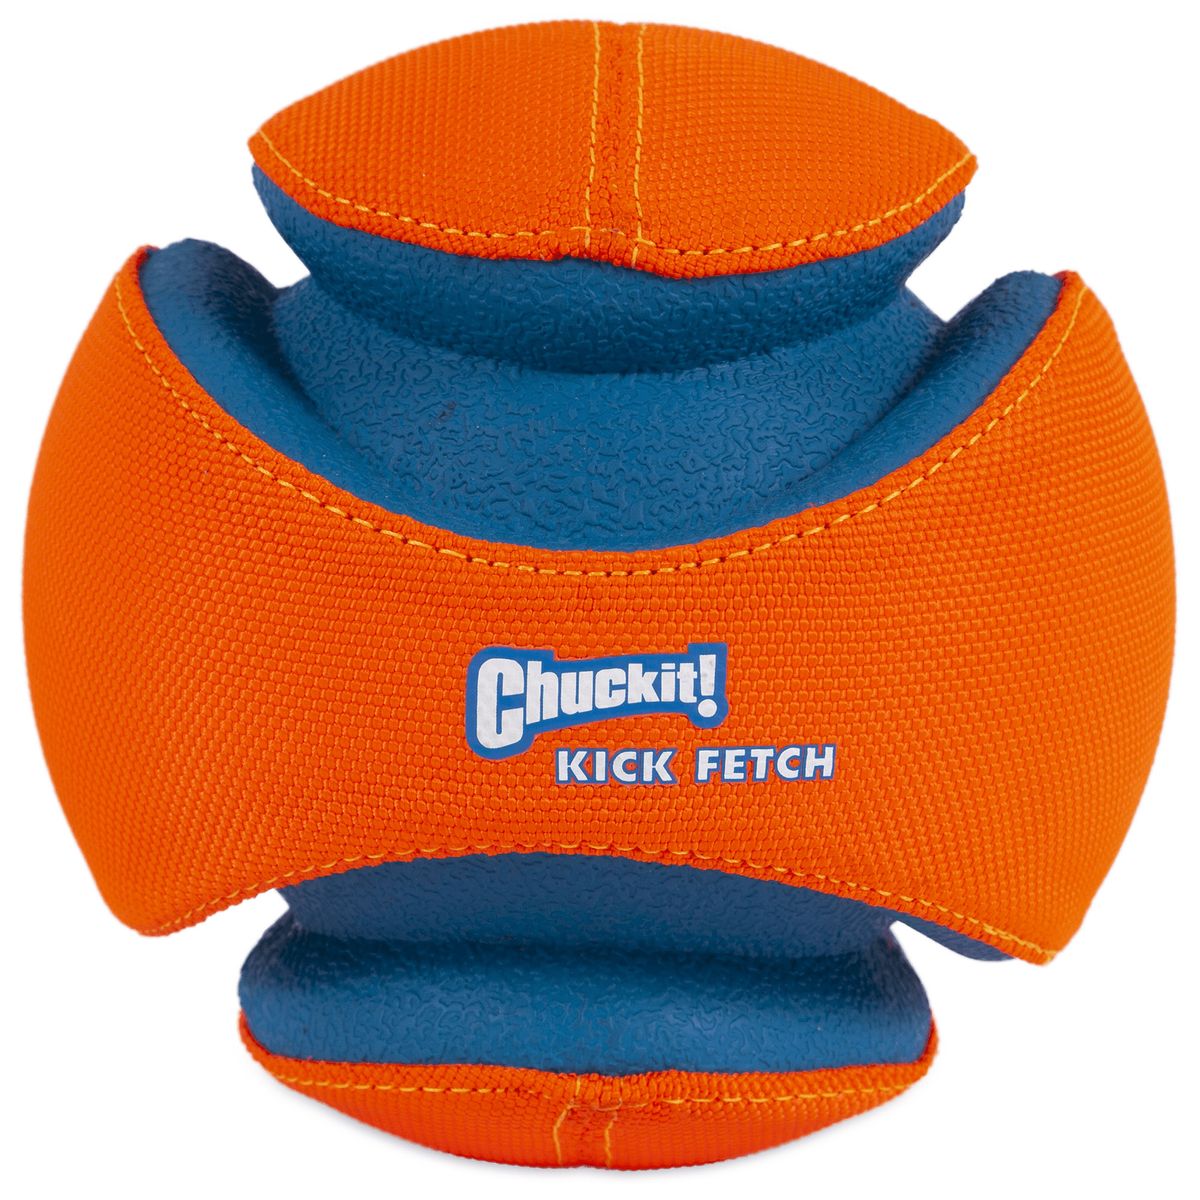 楽天Walmart 楽天市場店[送料無料] Chuckit! キックフェッチボール 犬用おもちゃ 小 [楽天海外通販] | Chuckit! Kick Fetch Ball Dog Toy, Small